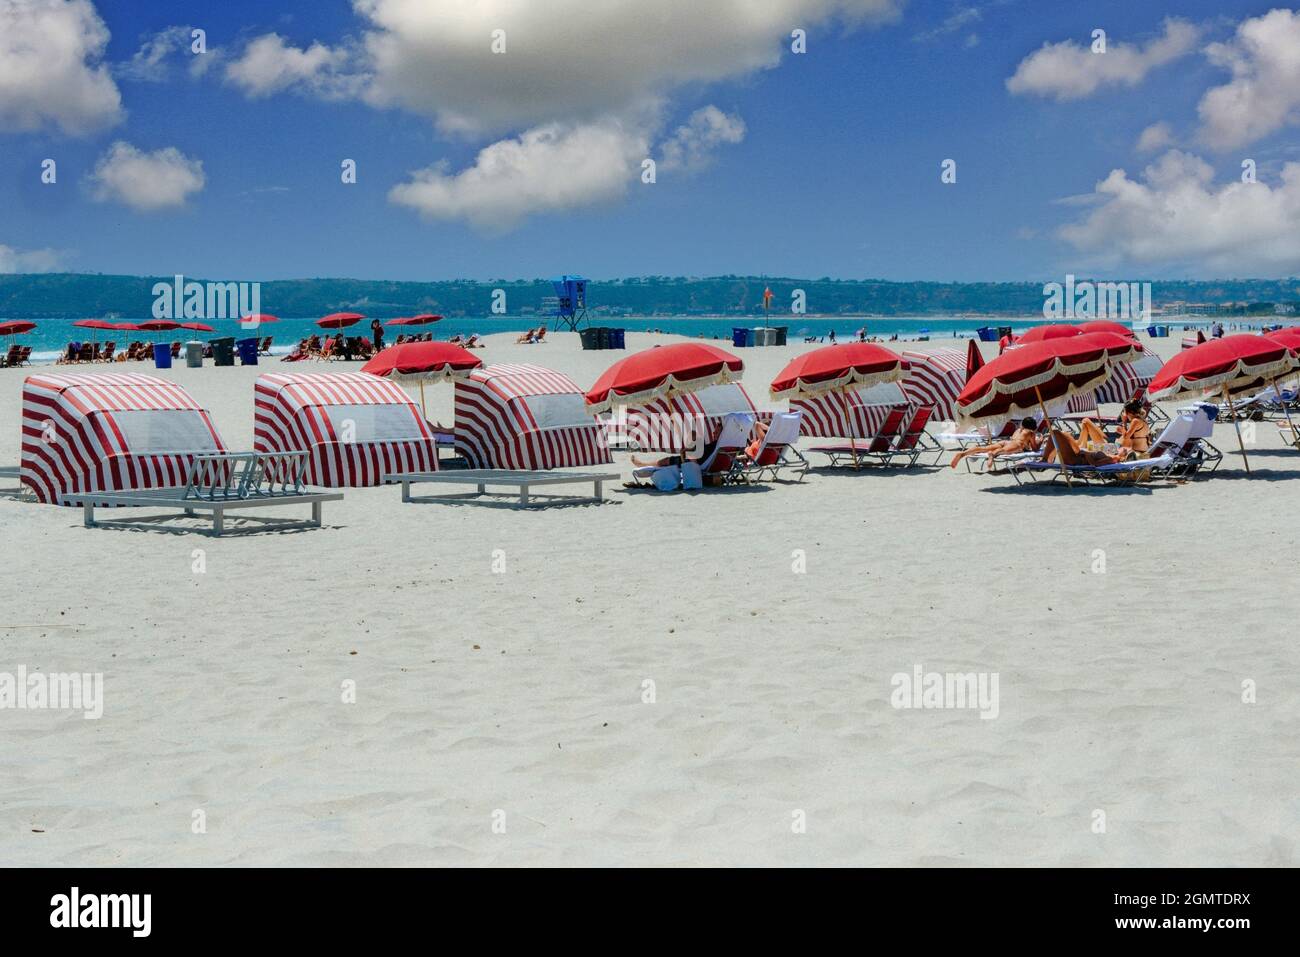 Plage de sable blanc avec parasols de plage fauteuils inclinables, personnes, bikinis, eau bleue, rayures rouges et parasols à franges victoriens, Coronado Island, CA Banque D'Images